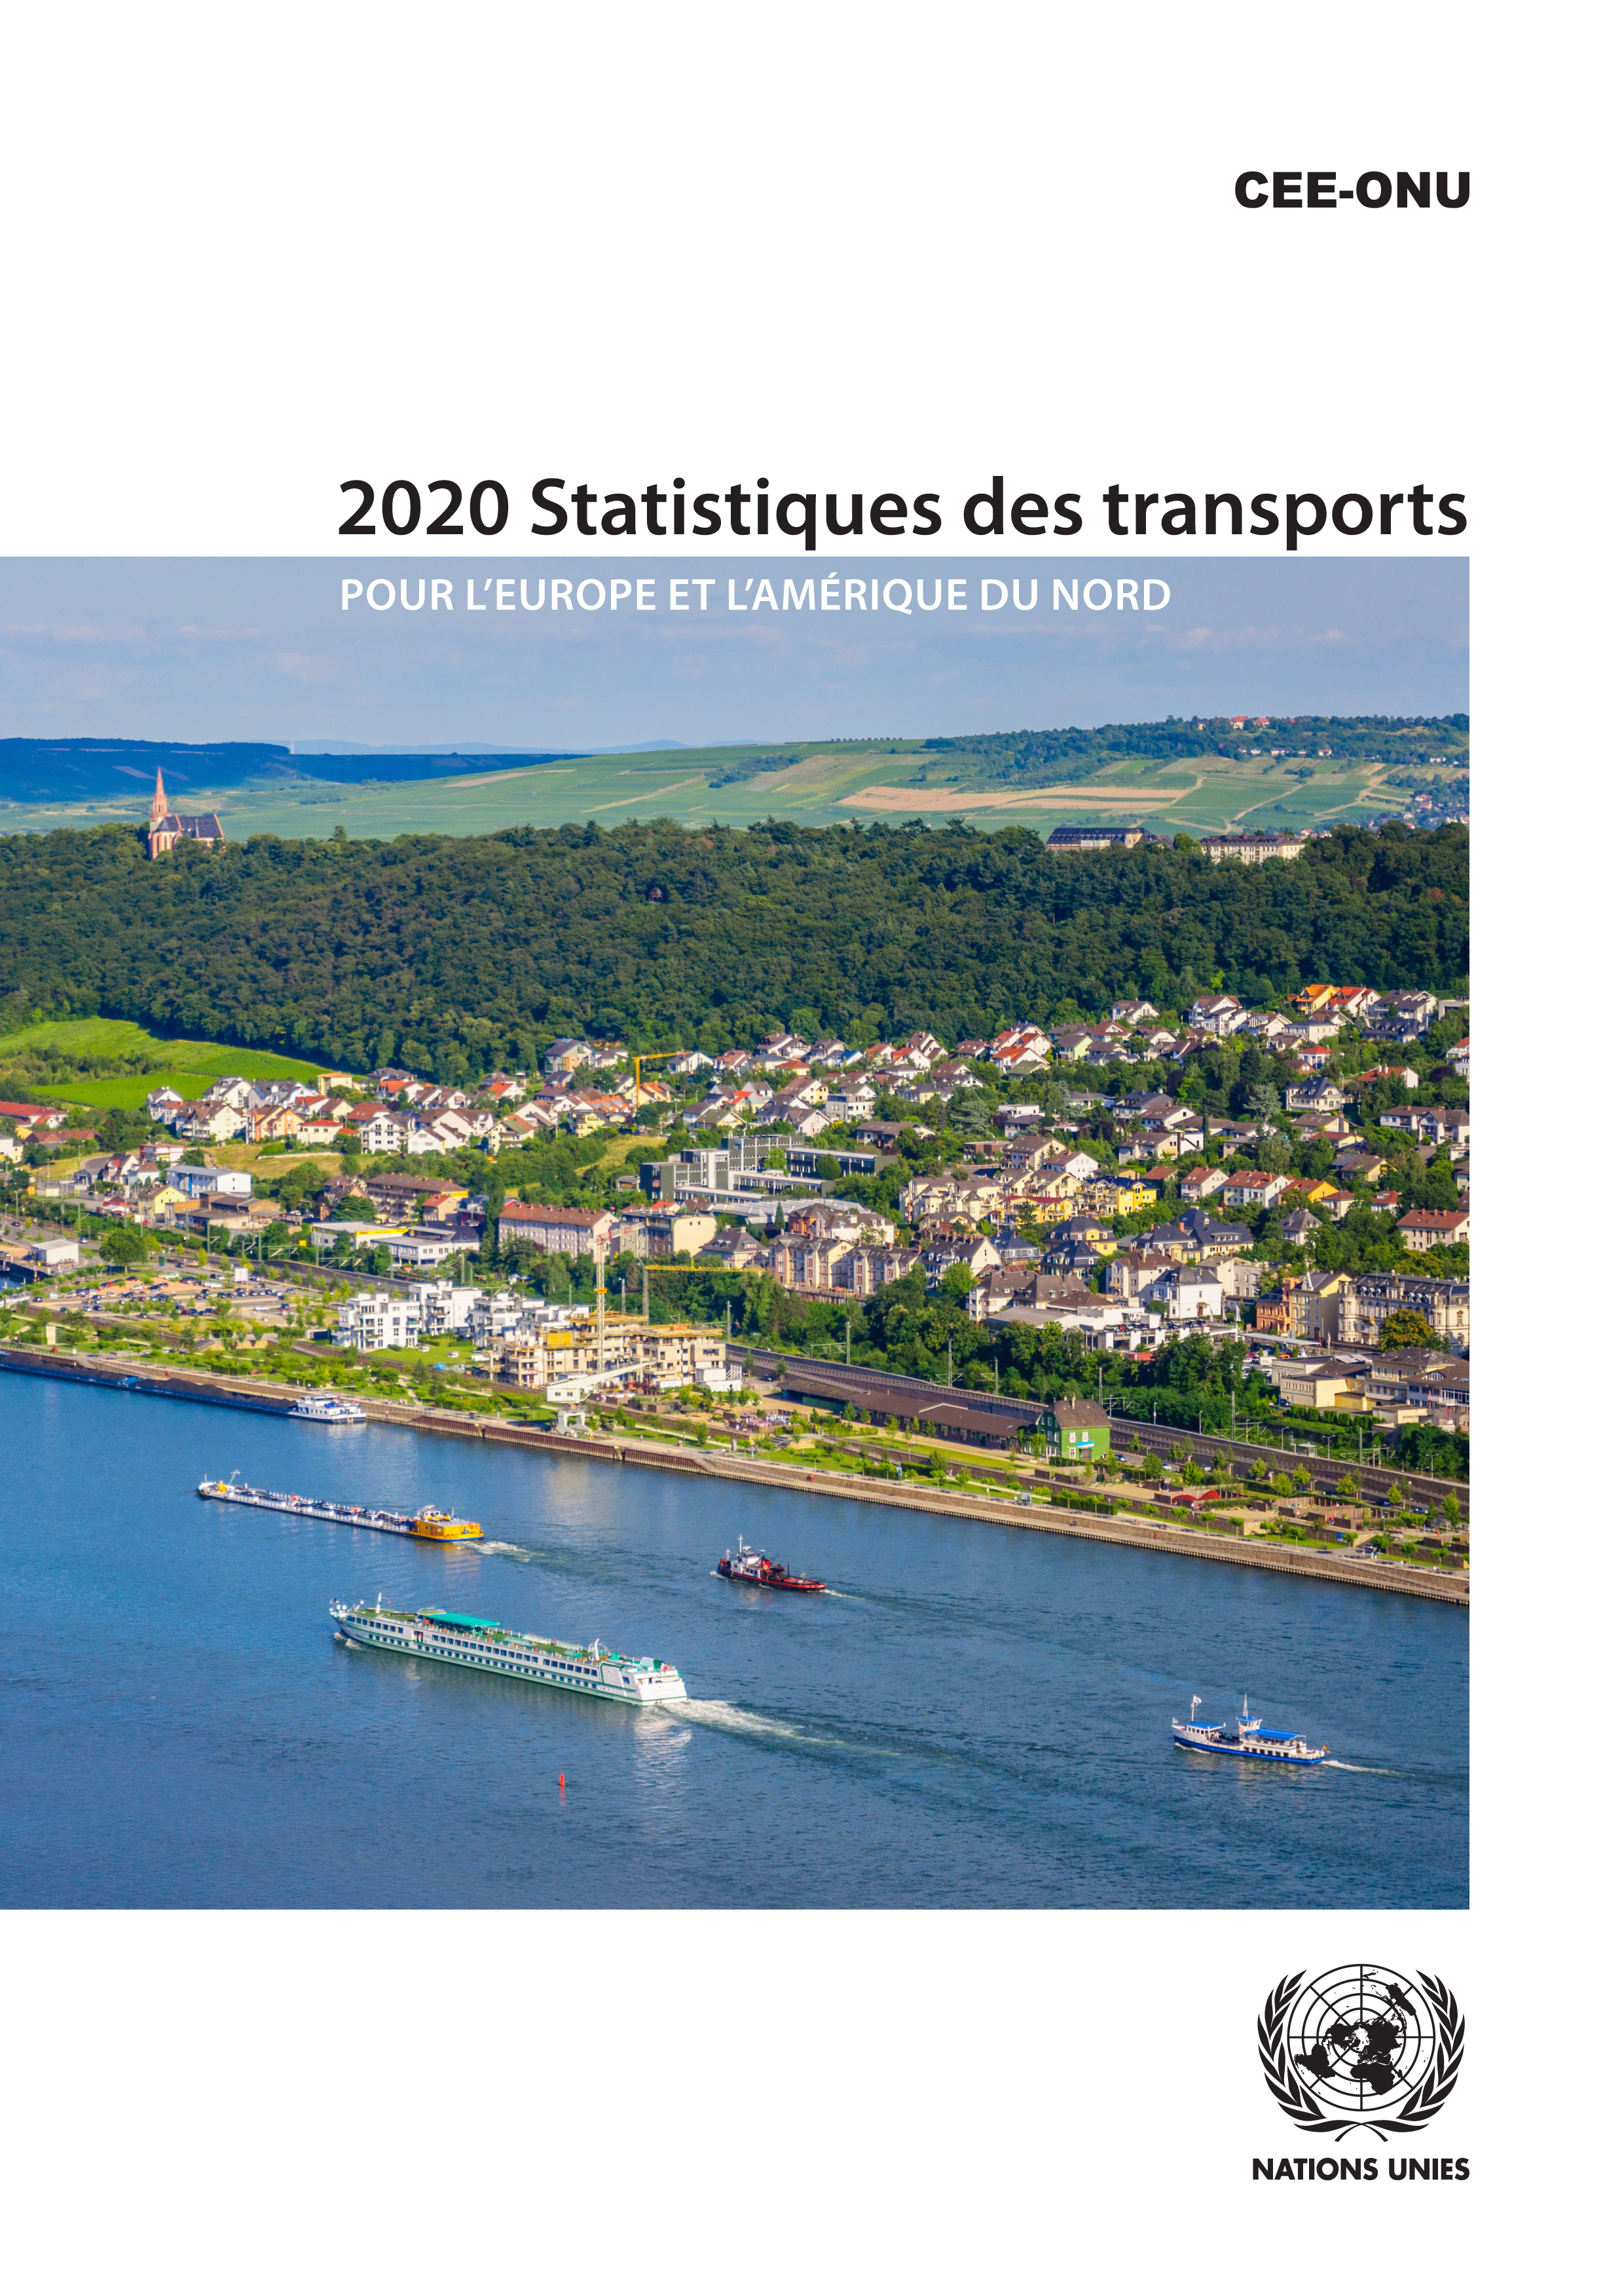 image of 2020 Statistiques des transports pour l'Europe et l'Amérique du Nord